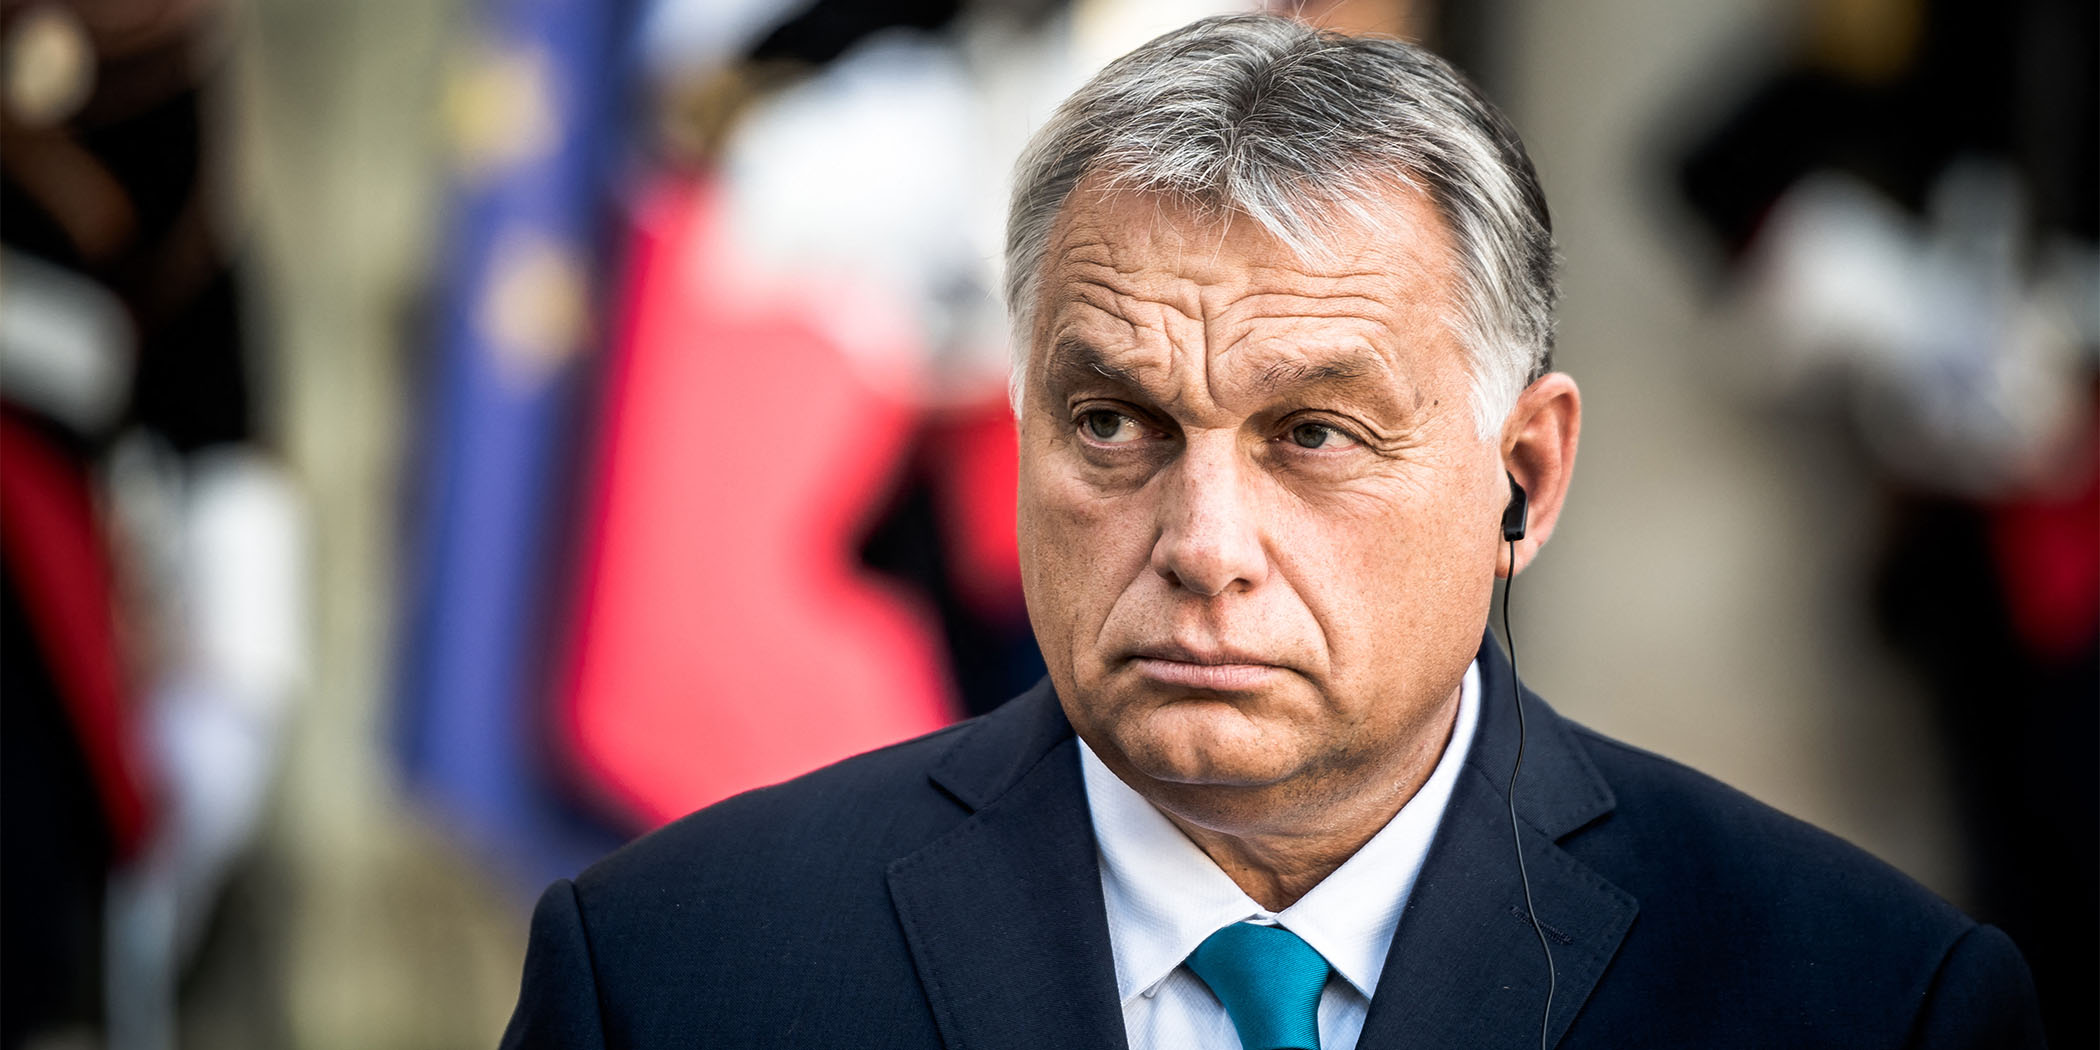 Egész oldalas szivárványos hirdetésben üzen egy belga lap Orbán Viktornak